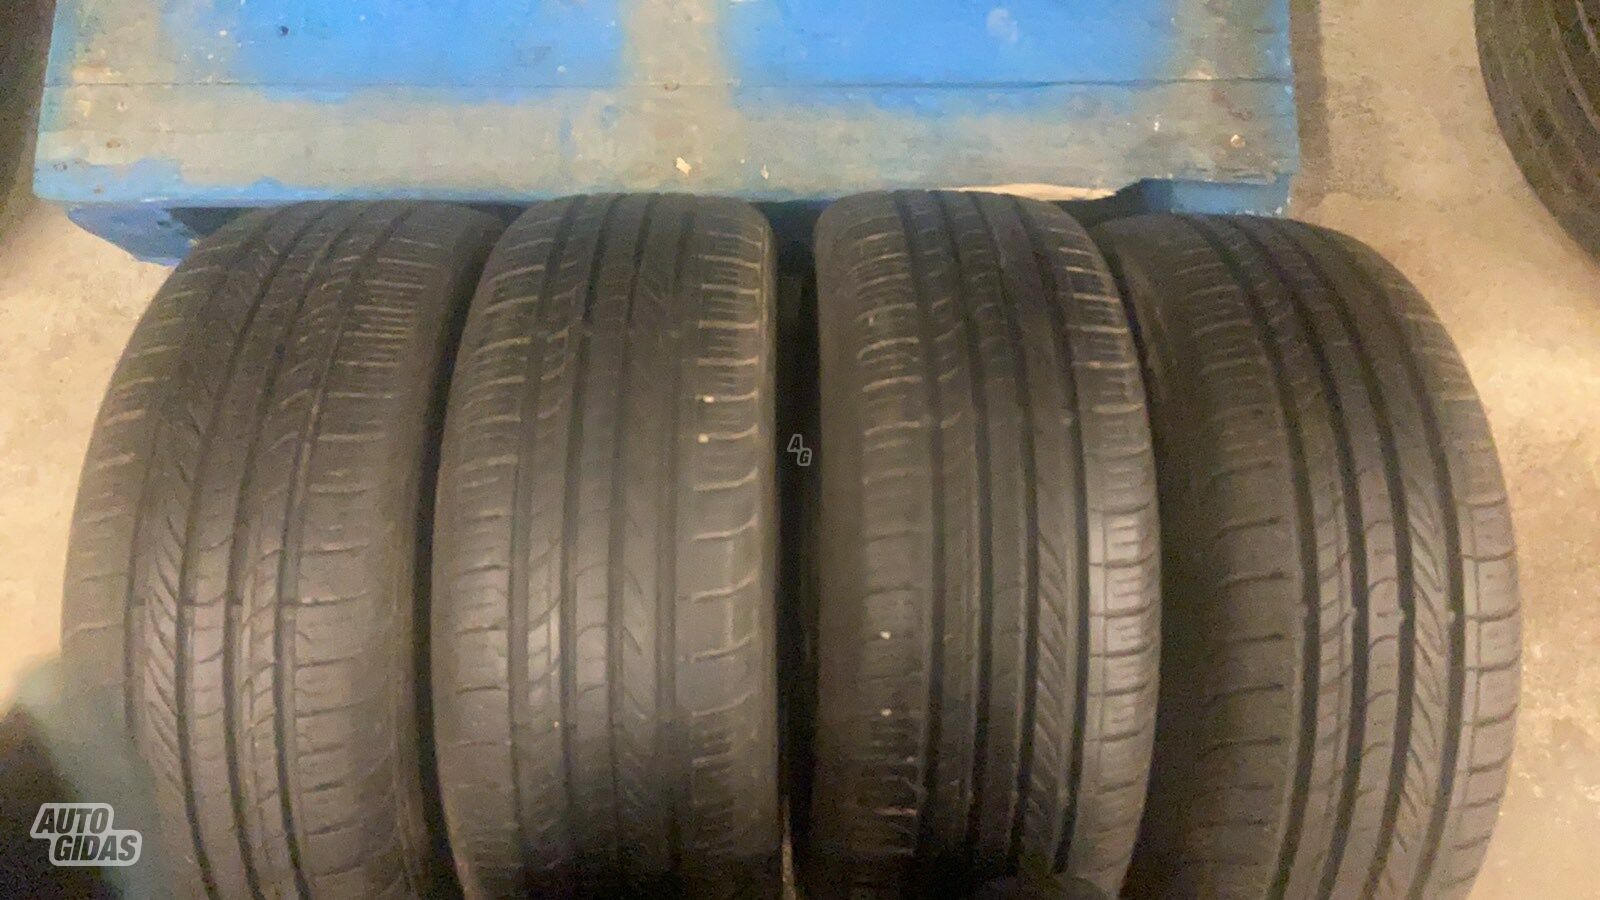 Nexen SH01 R15 summer tyres passanger car